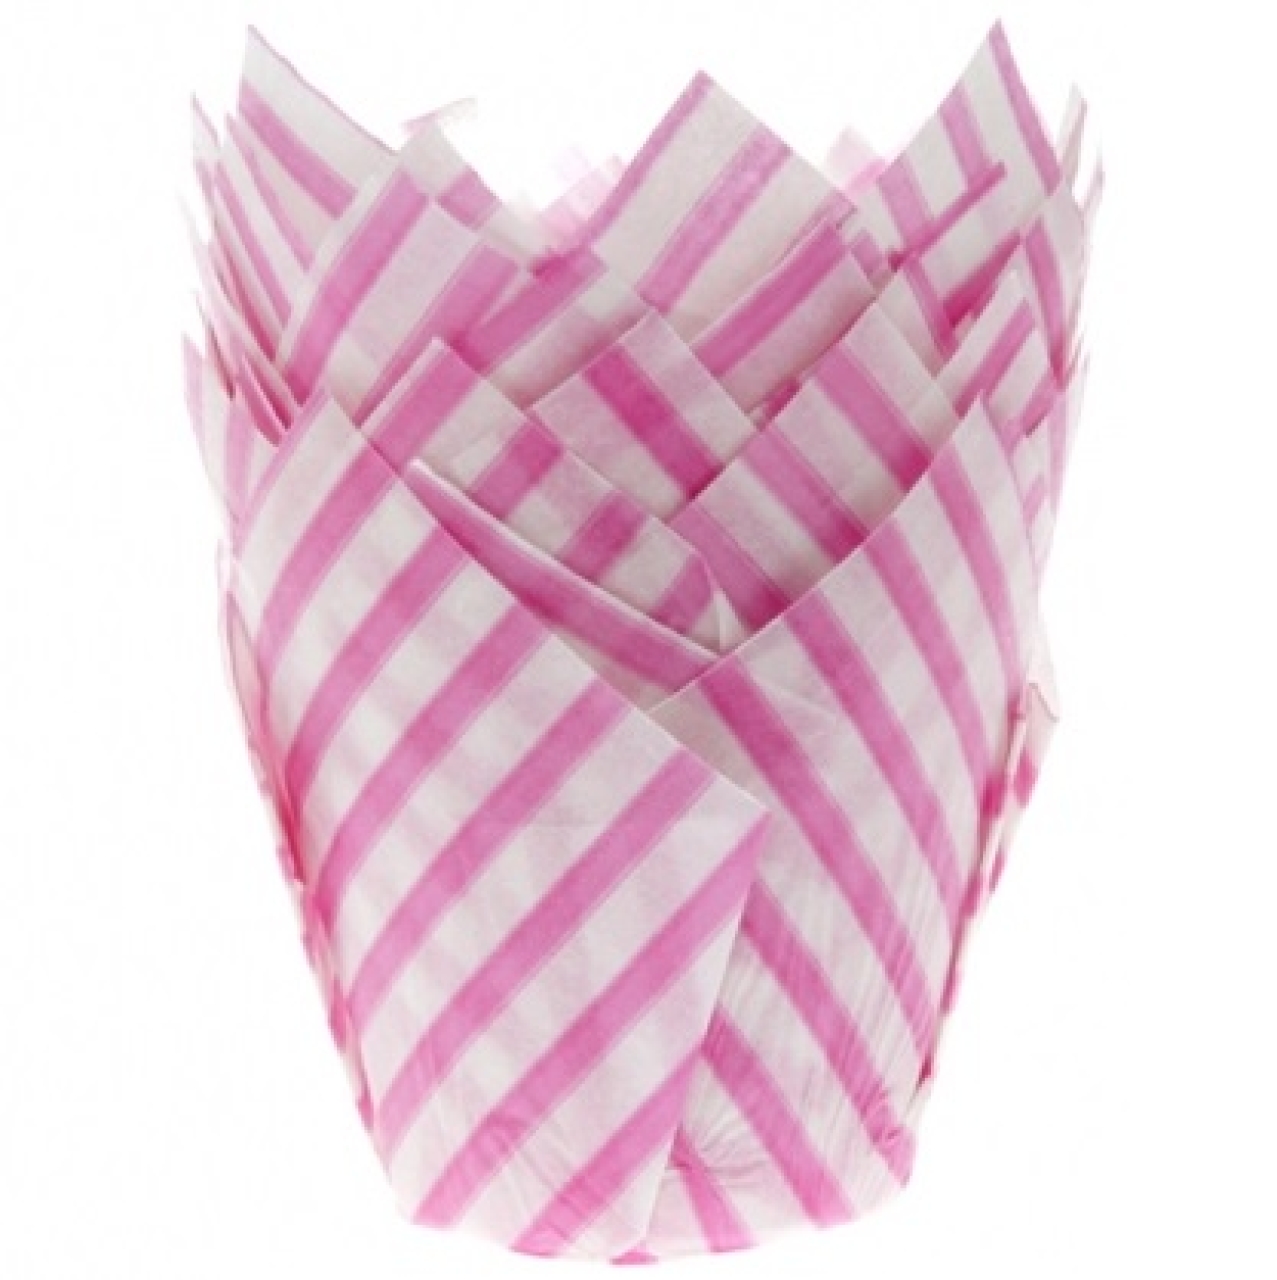 Tulip Muffinförmchen, 200 Stk, Durchmesser: 5 cm, pink gestreift